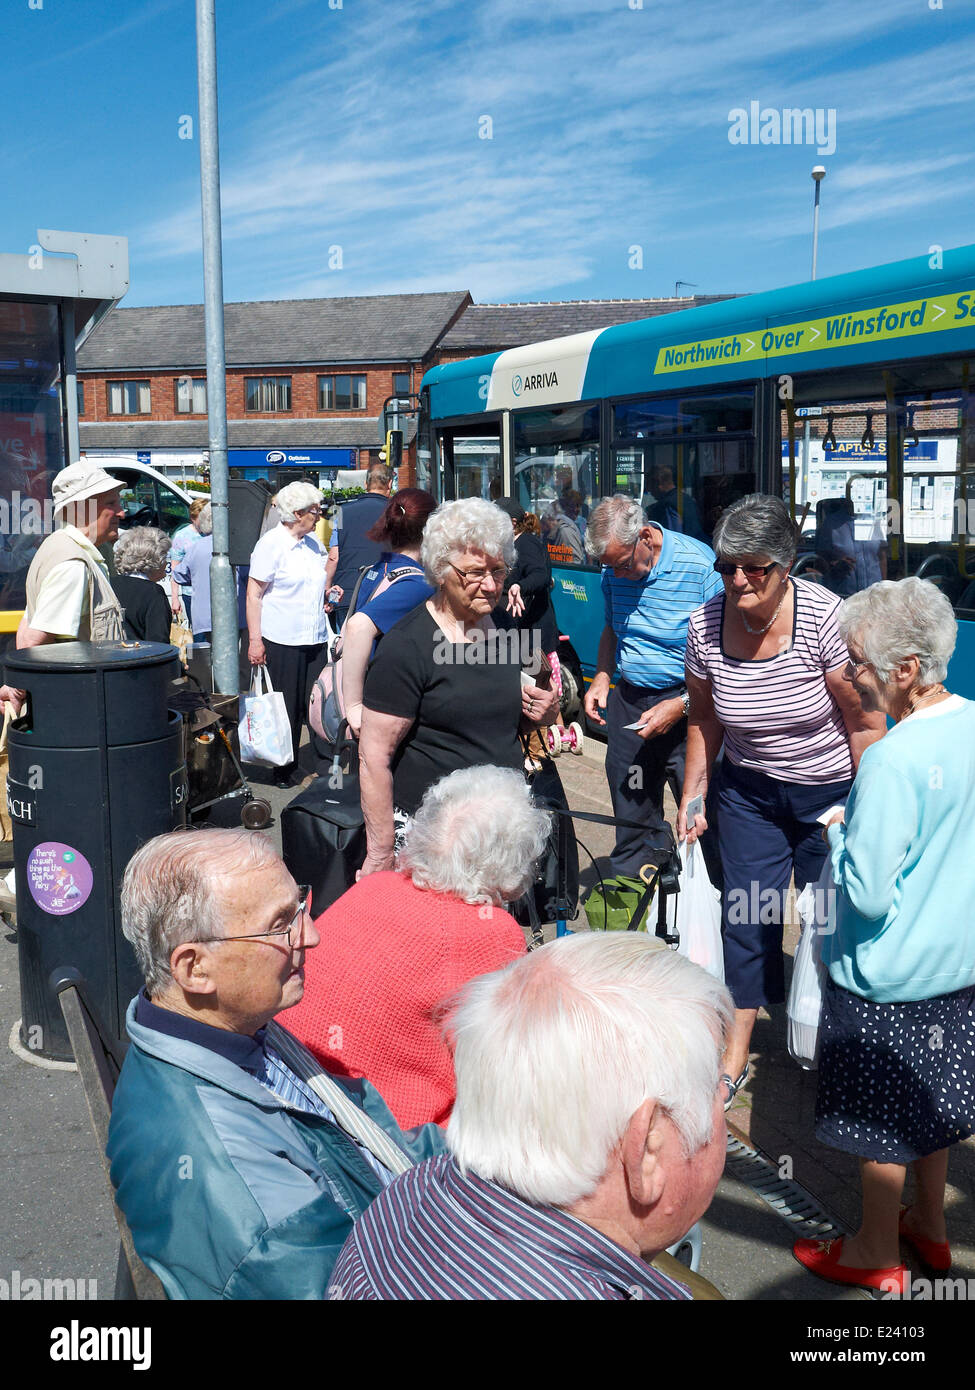 S Passingers sur bus arriva à Sandbach Cheshire UK Banque D'Images